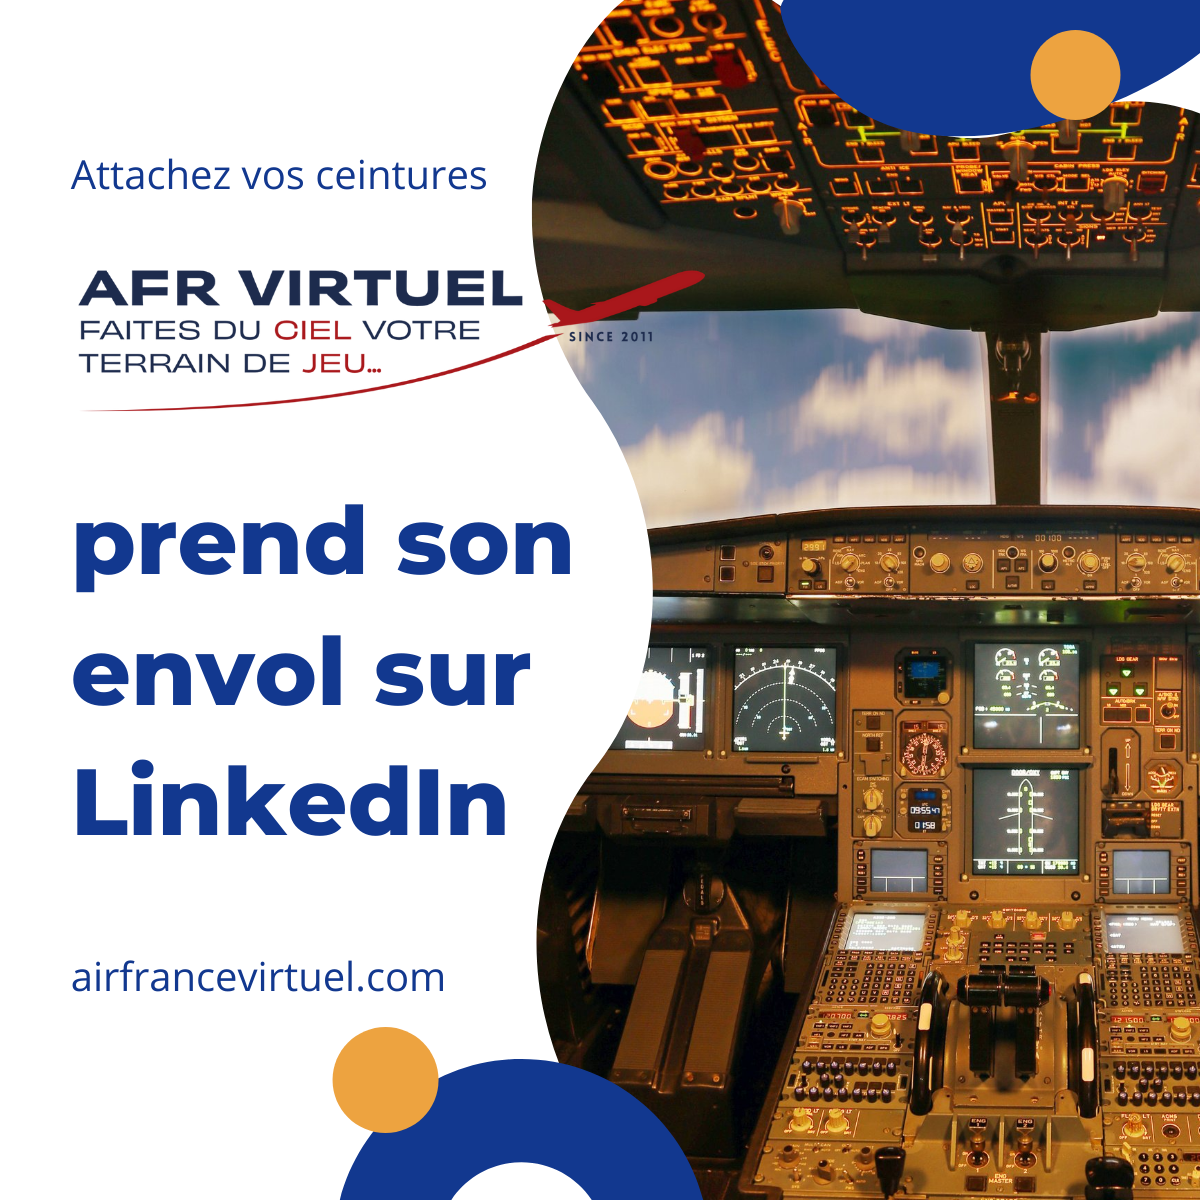 Image de publication qui illustre AirFrance Virtuel qui prend son envol sur LinkedIn